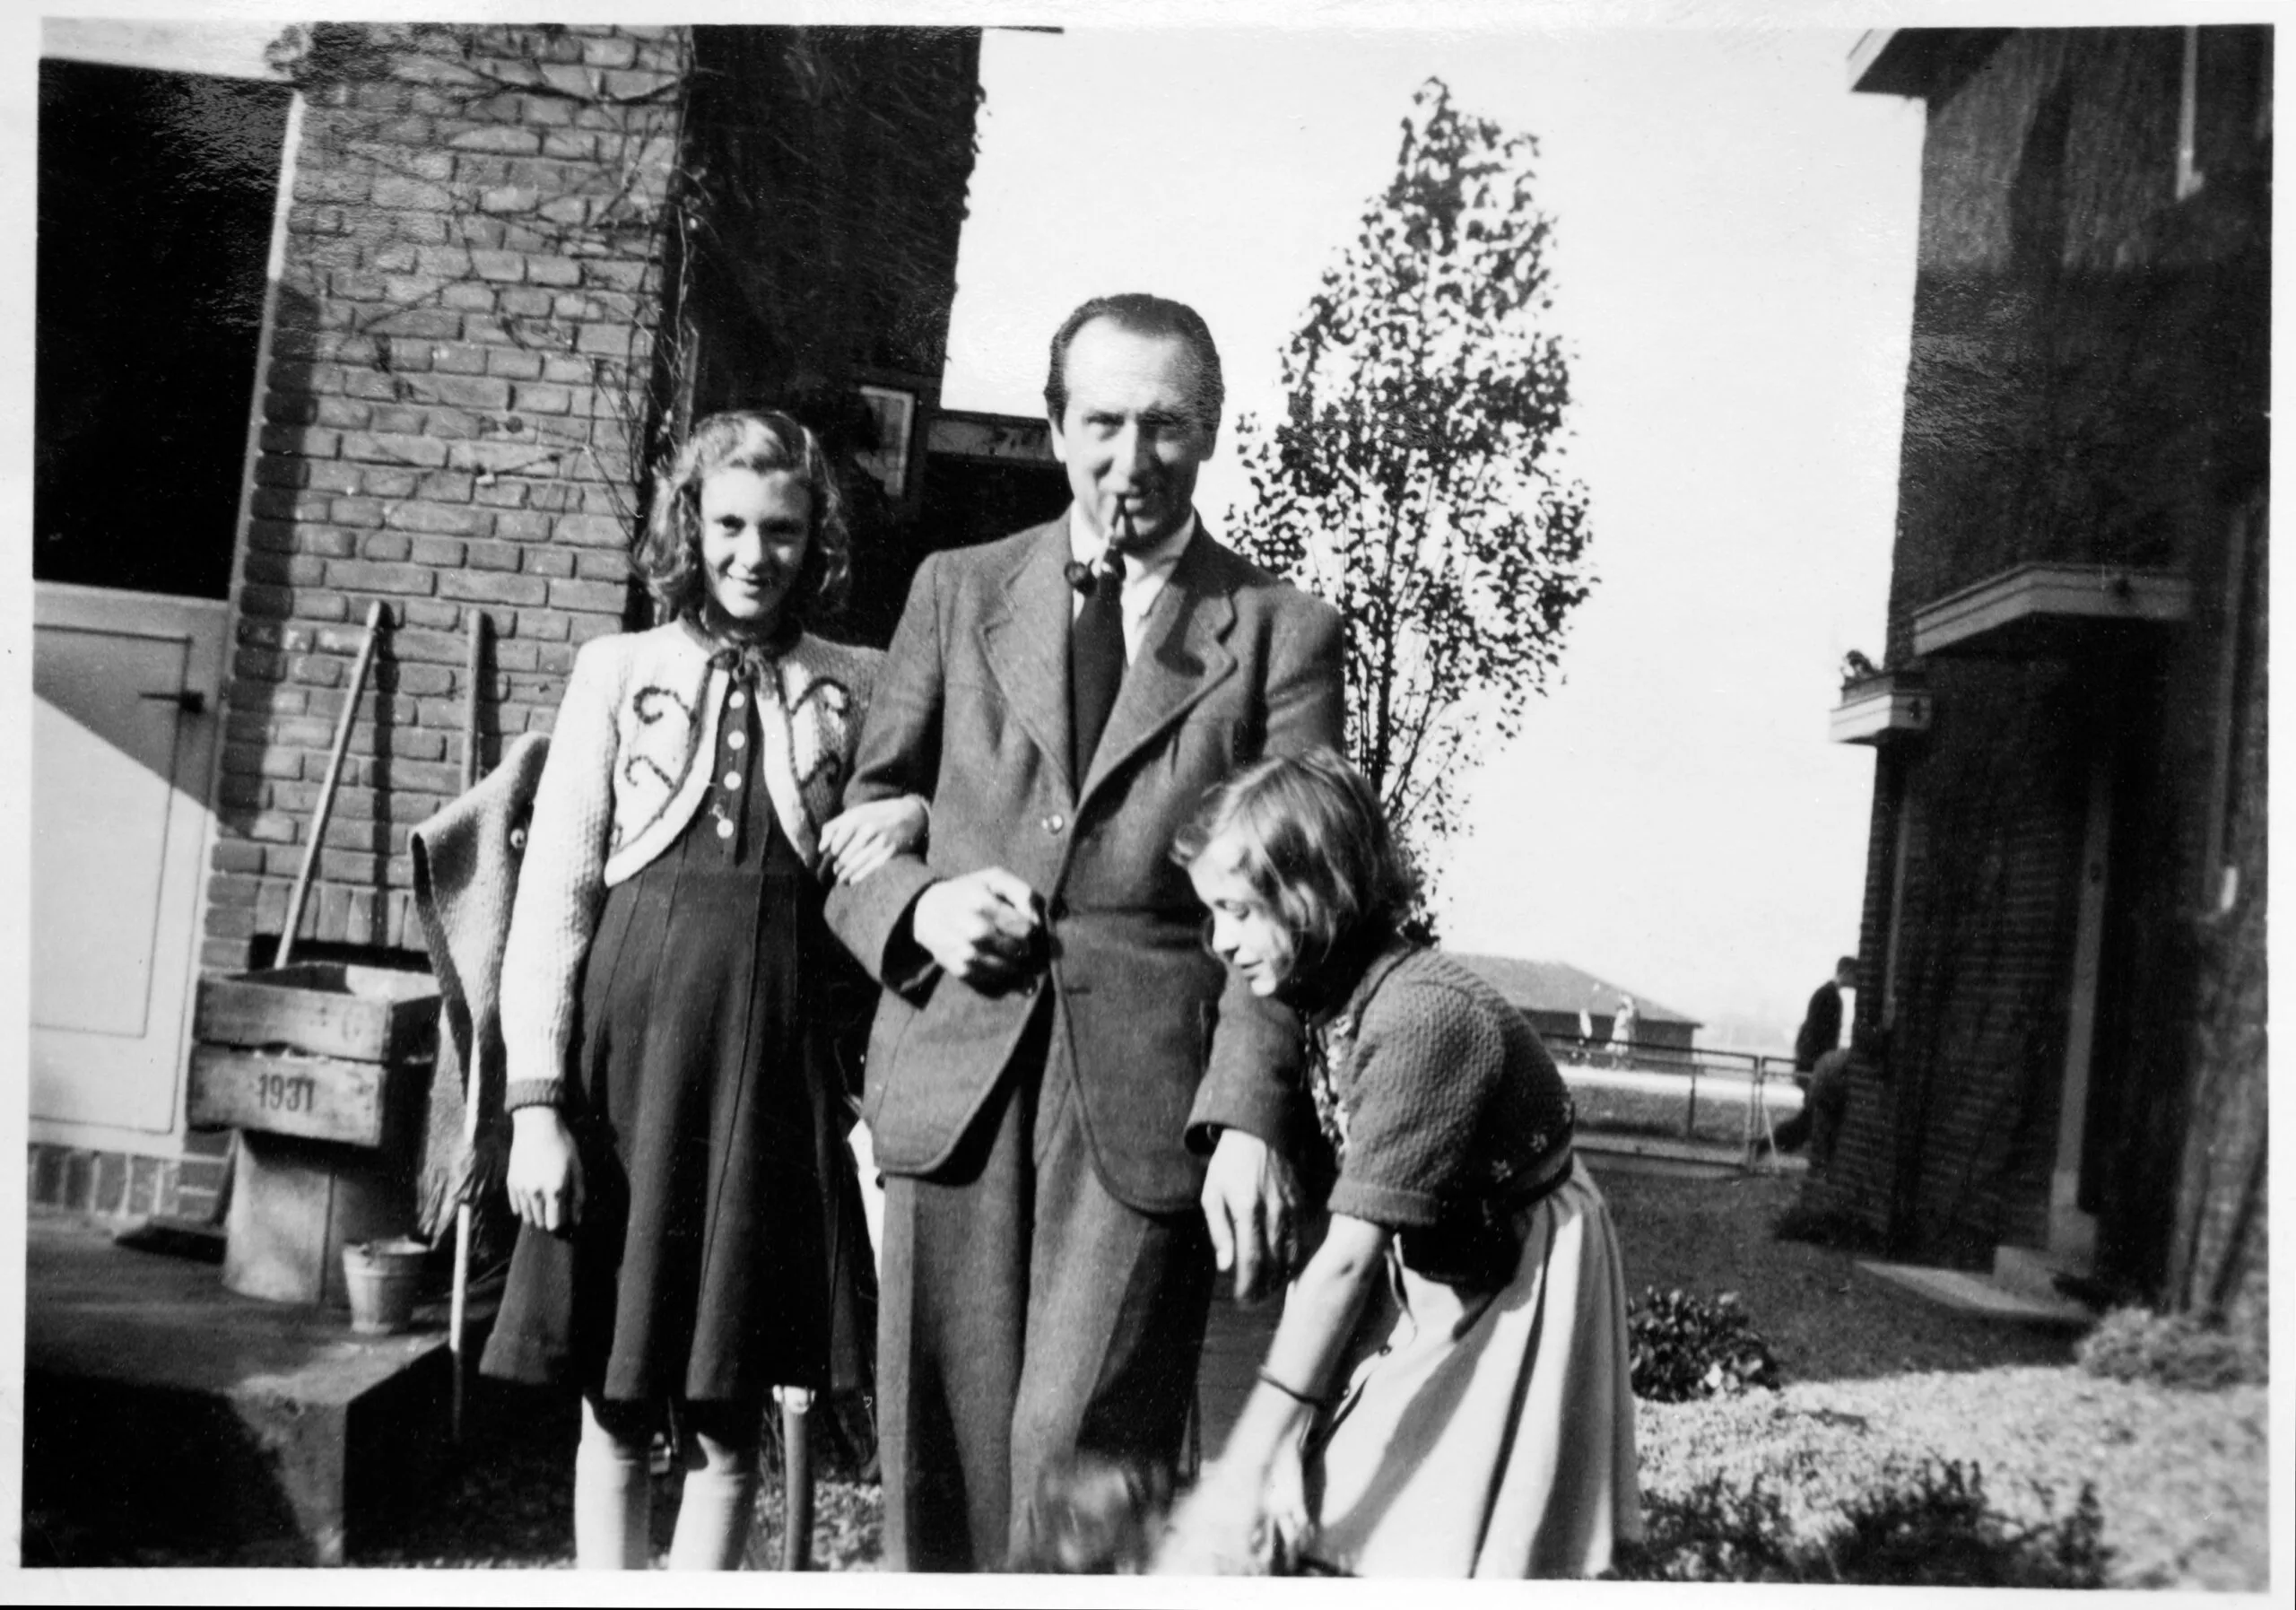 Den Besten met dochters, Schiebroeksesingel 9, Rotterdam, eind jaren '30